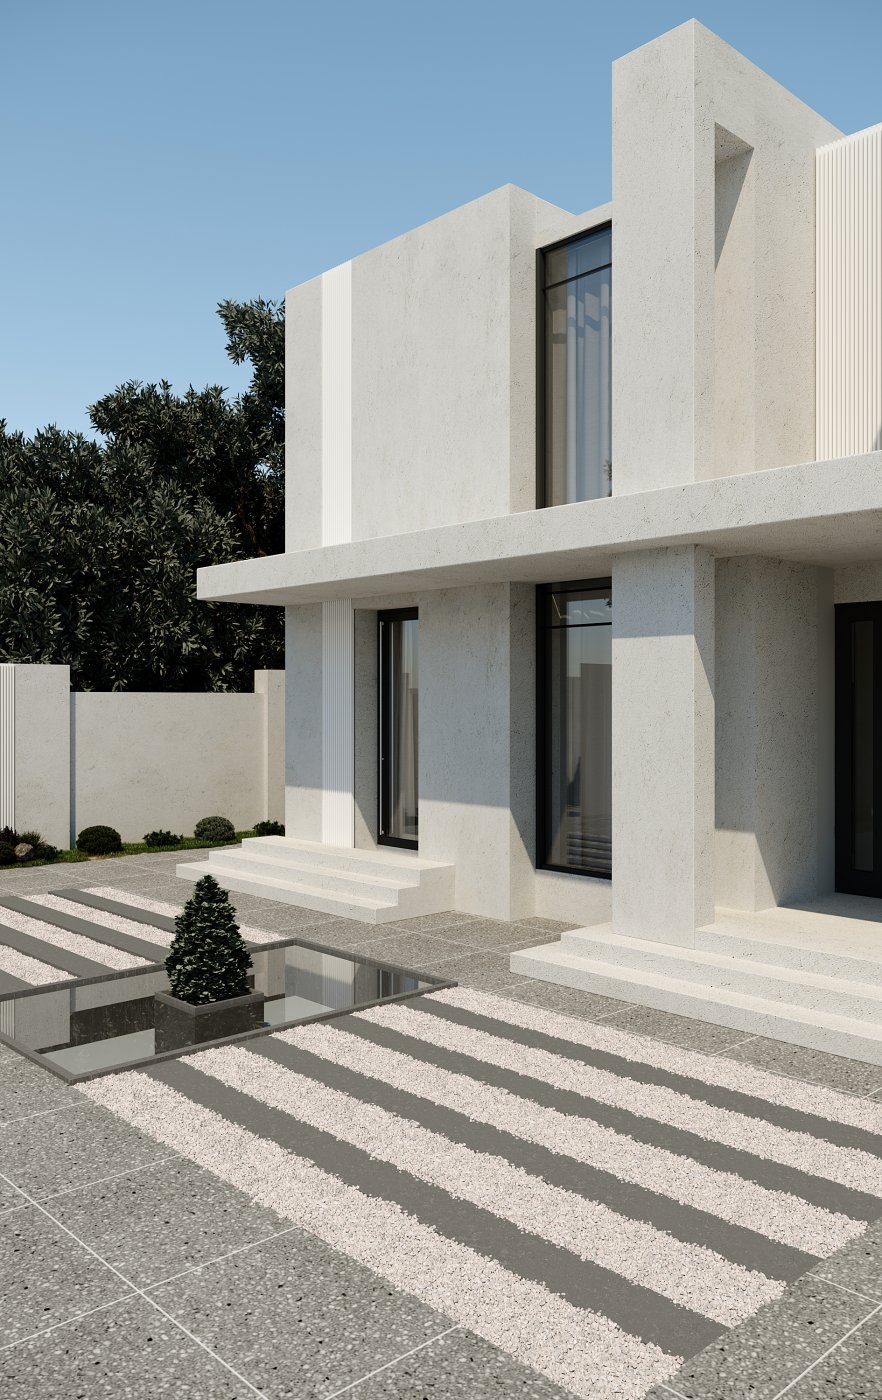 Minimal Design villa